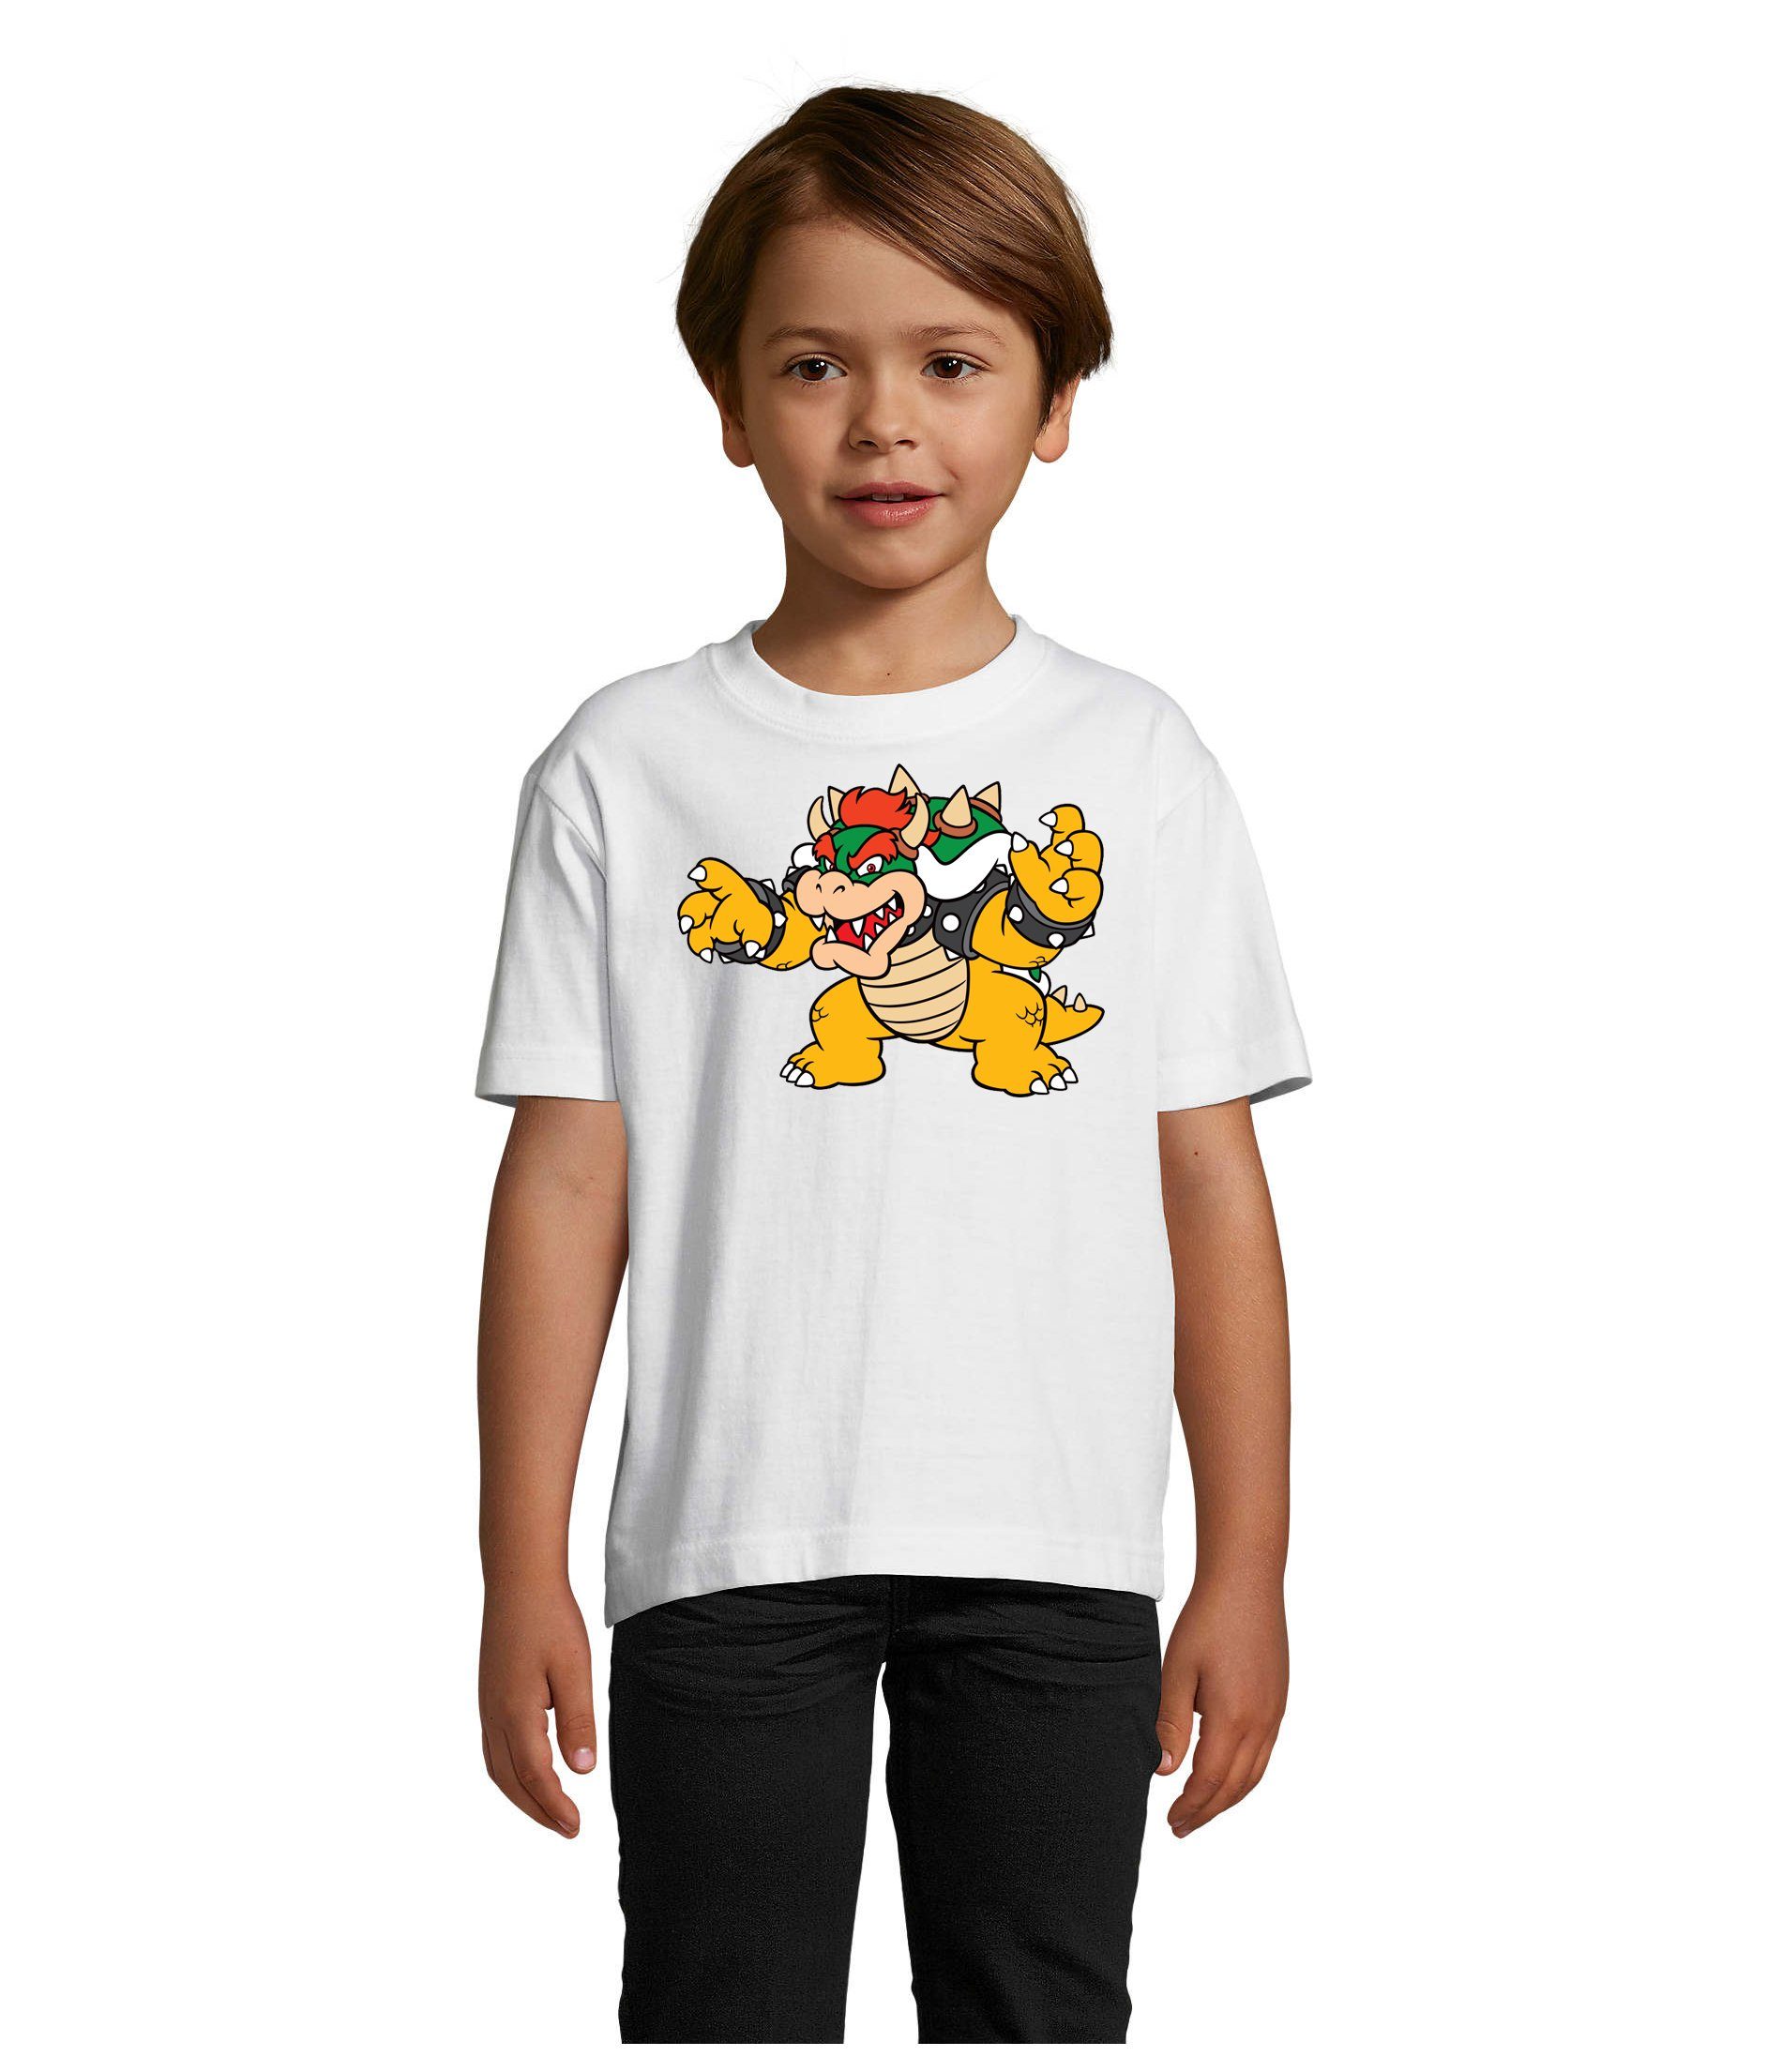 Blondie & Brownie T-Shirt Weiss Game Nintendo Konsole Yoshi Kinder Mario Gamer Bowser Luigi